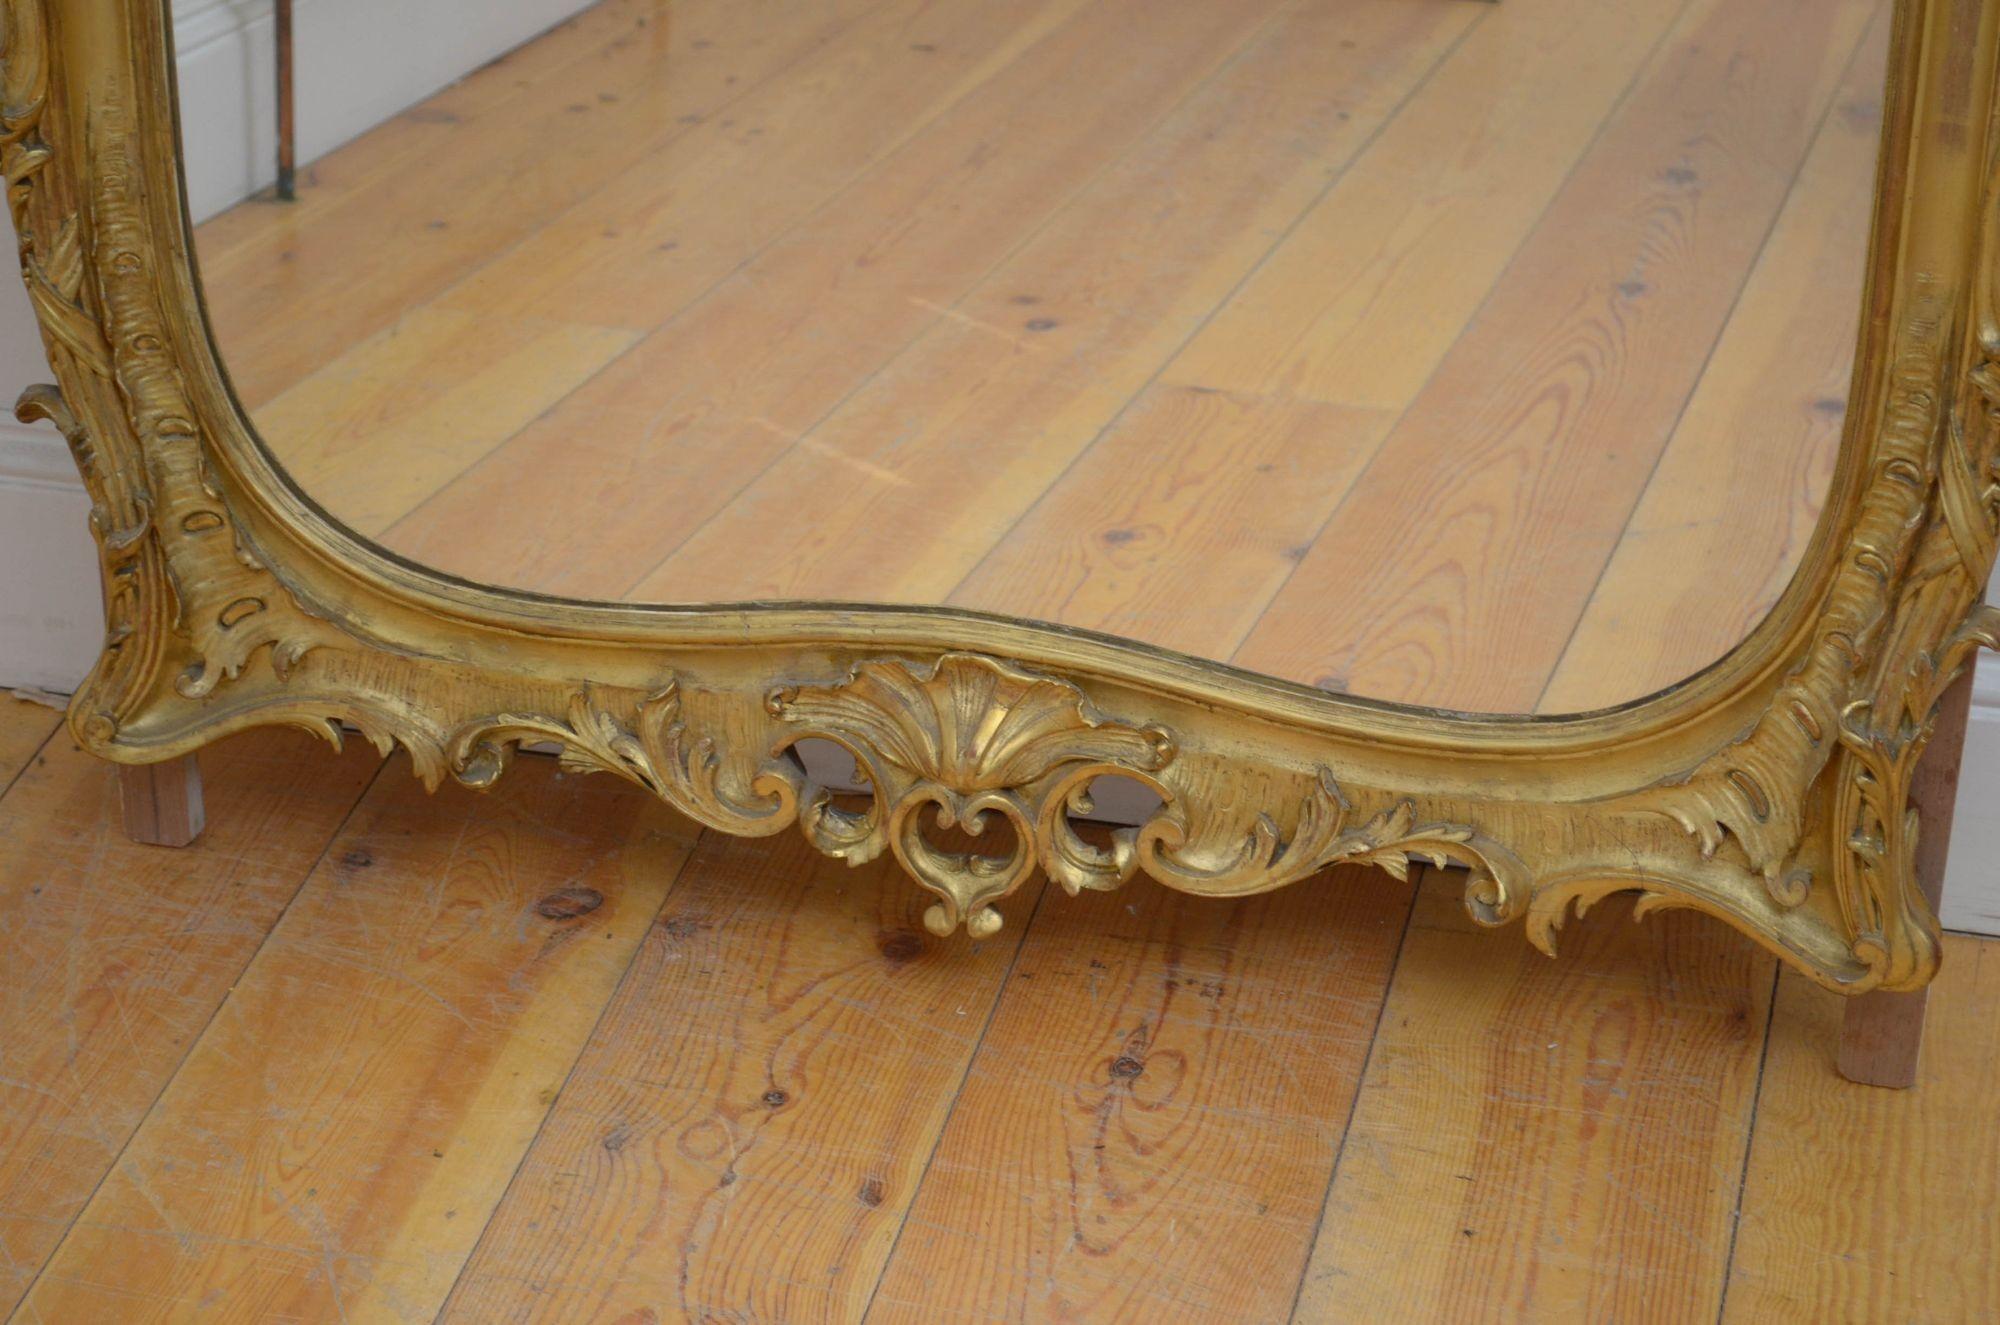 Sn5398 Exquis miroir mural en bois doré du 19e siècle, avec verre d'origine présentant quelques imperfections dans un cadre doré décoré de colonnes en grappe, d'arcs et de rinceaux feuillus, le tout avec une crête élaborée en forme de coquillage au